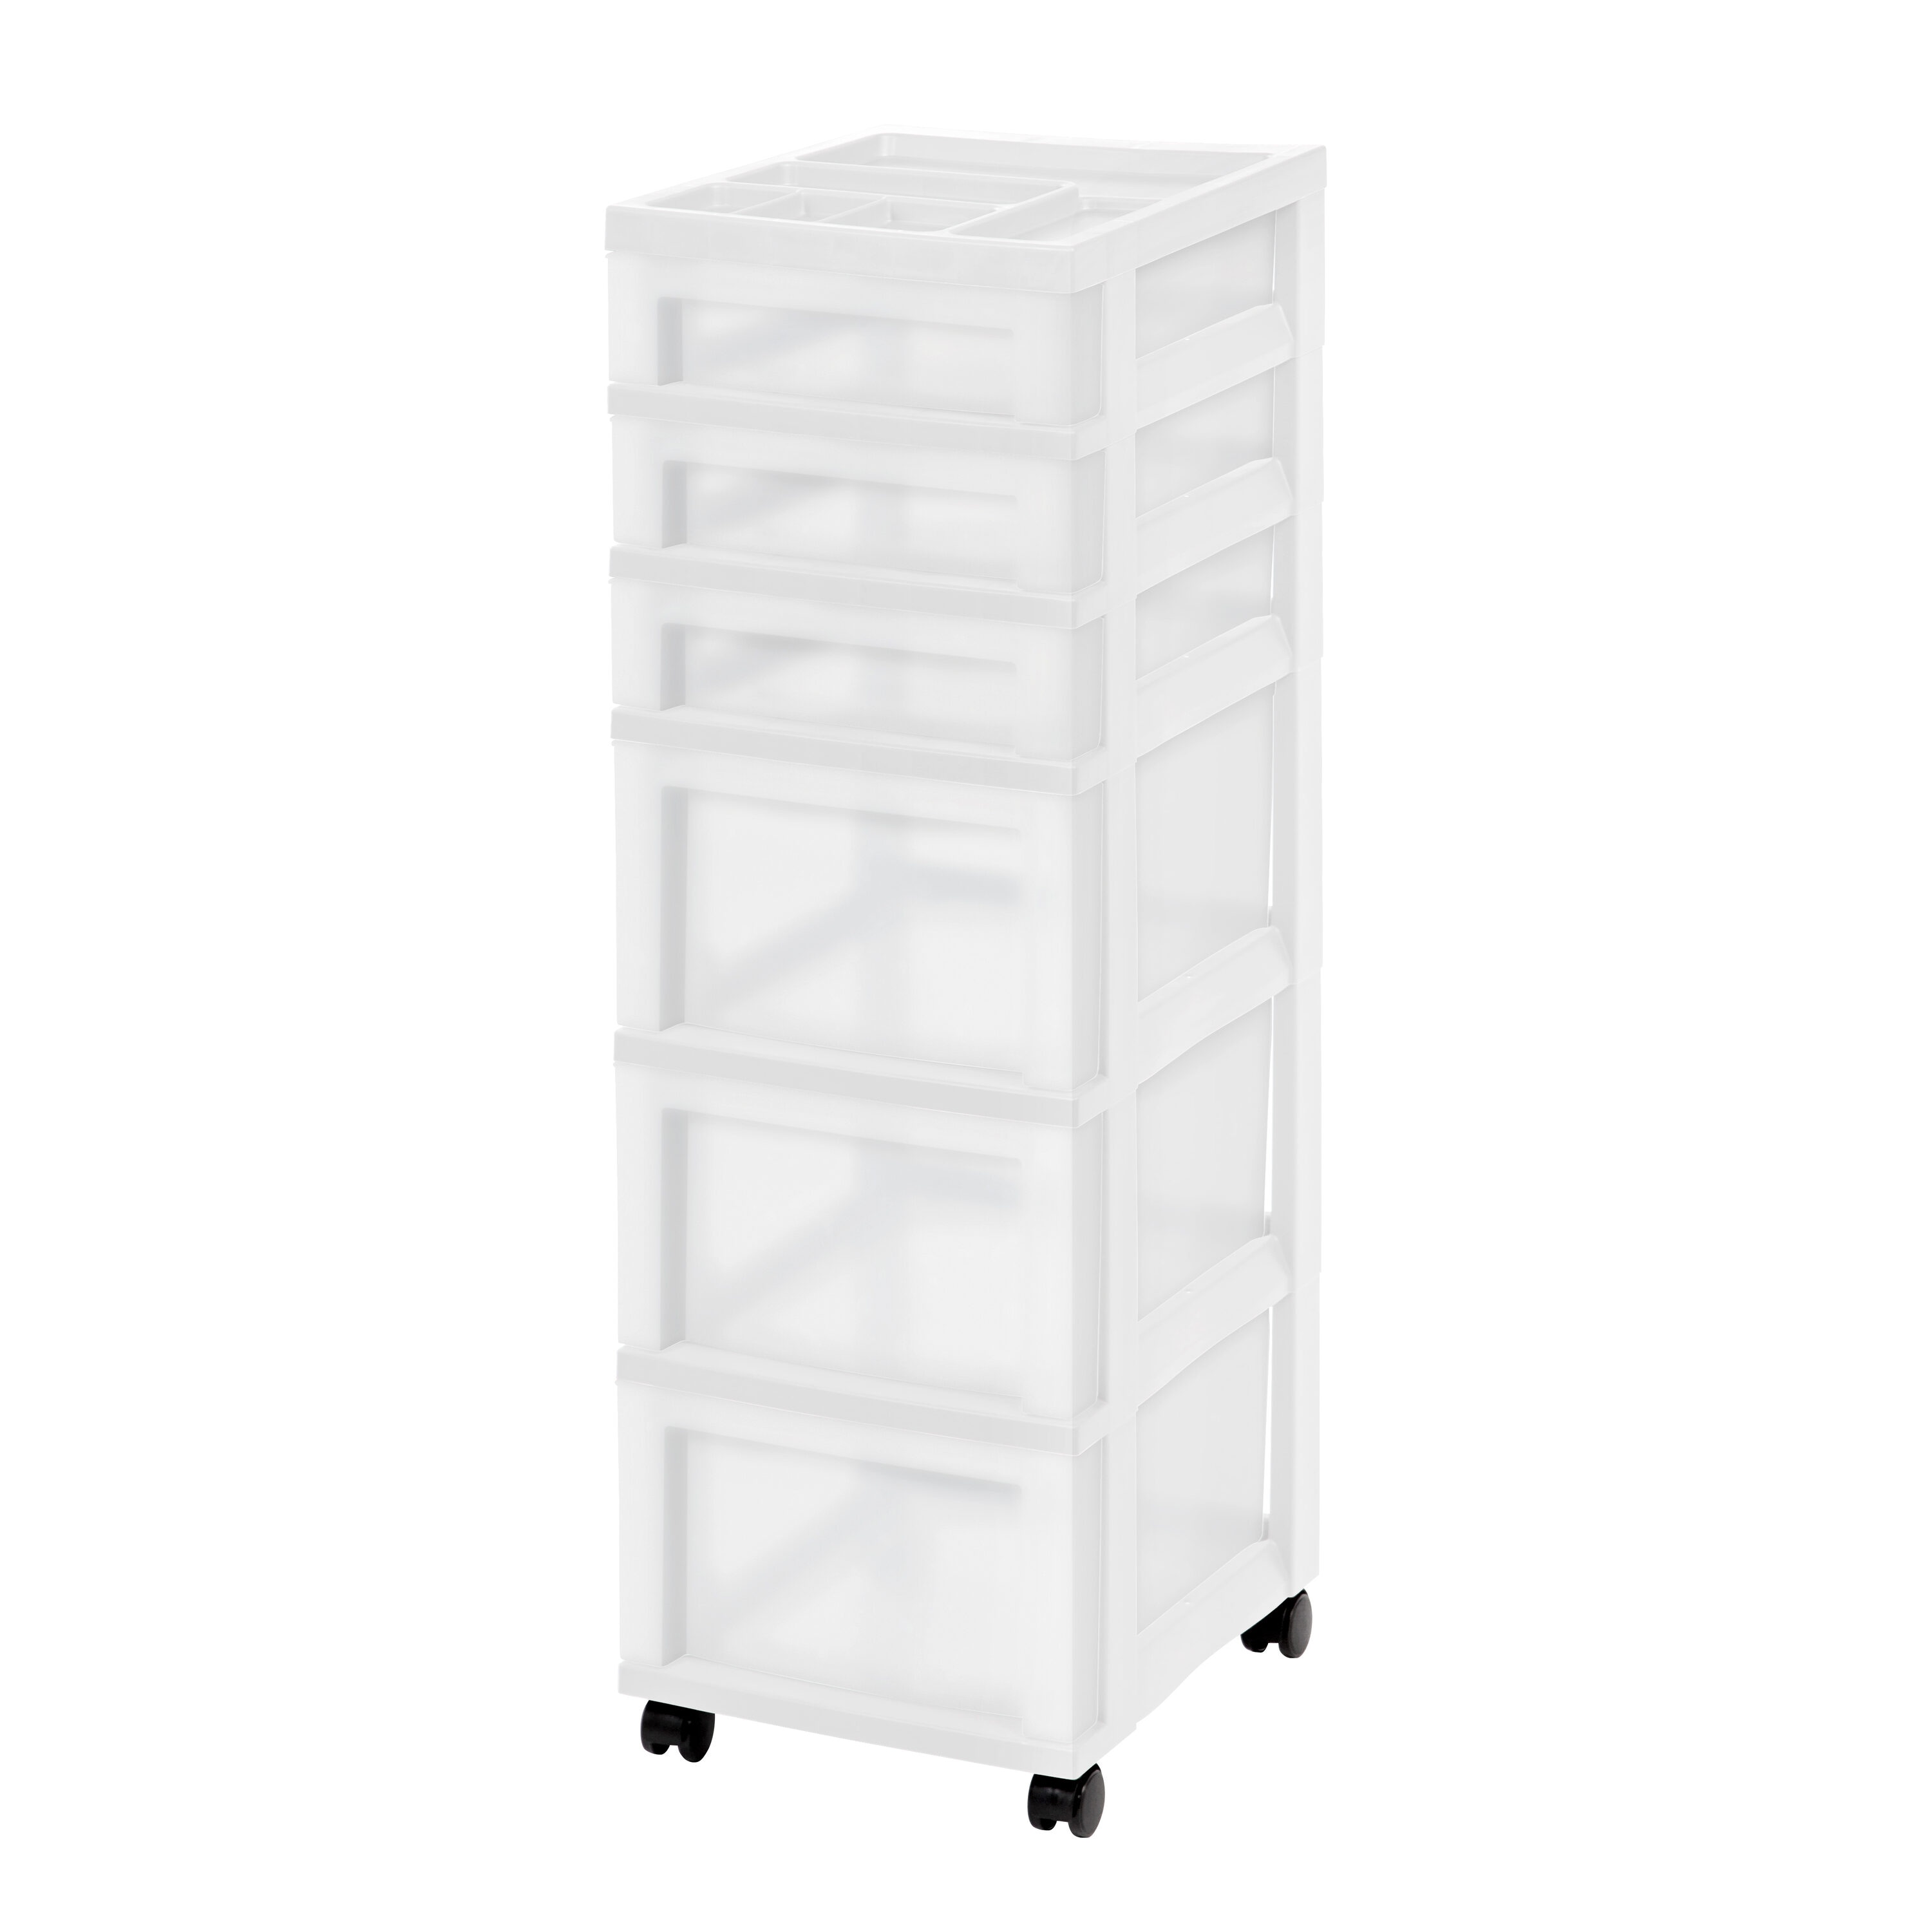 IRIS 6-Drawers White Rolling Plastic Storage Drawer Cart 36.56-in